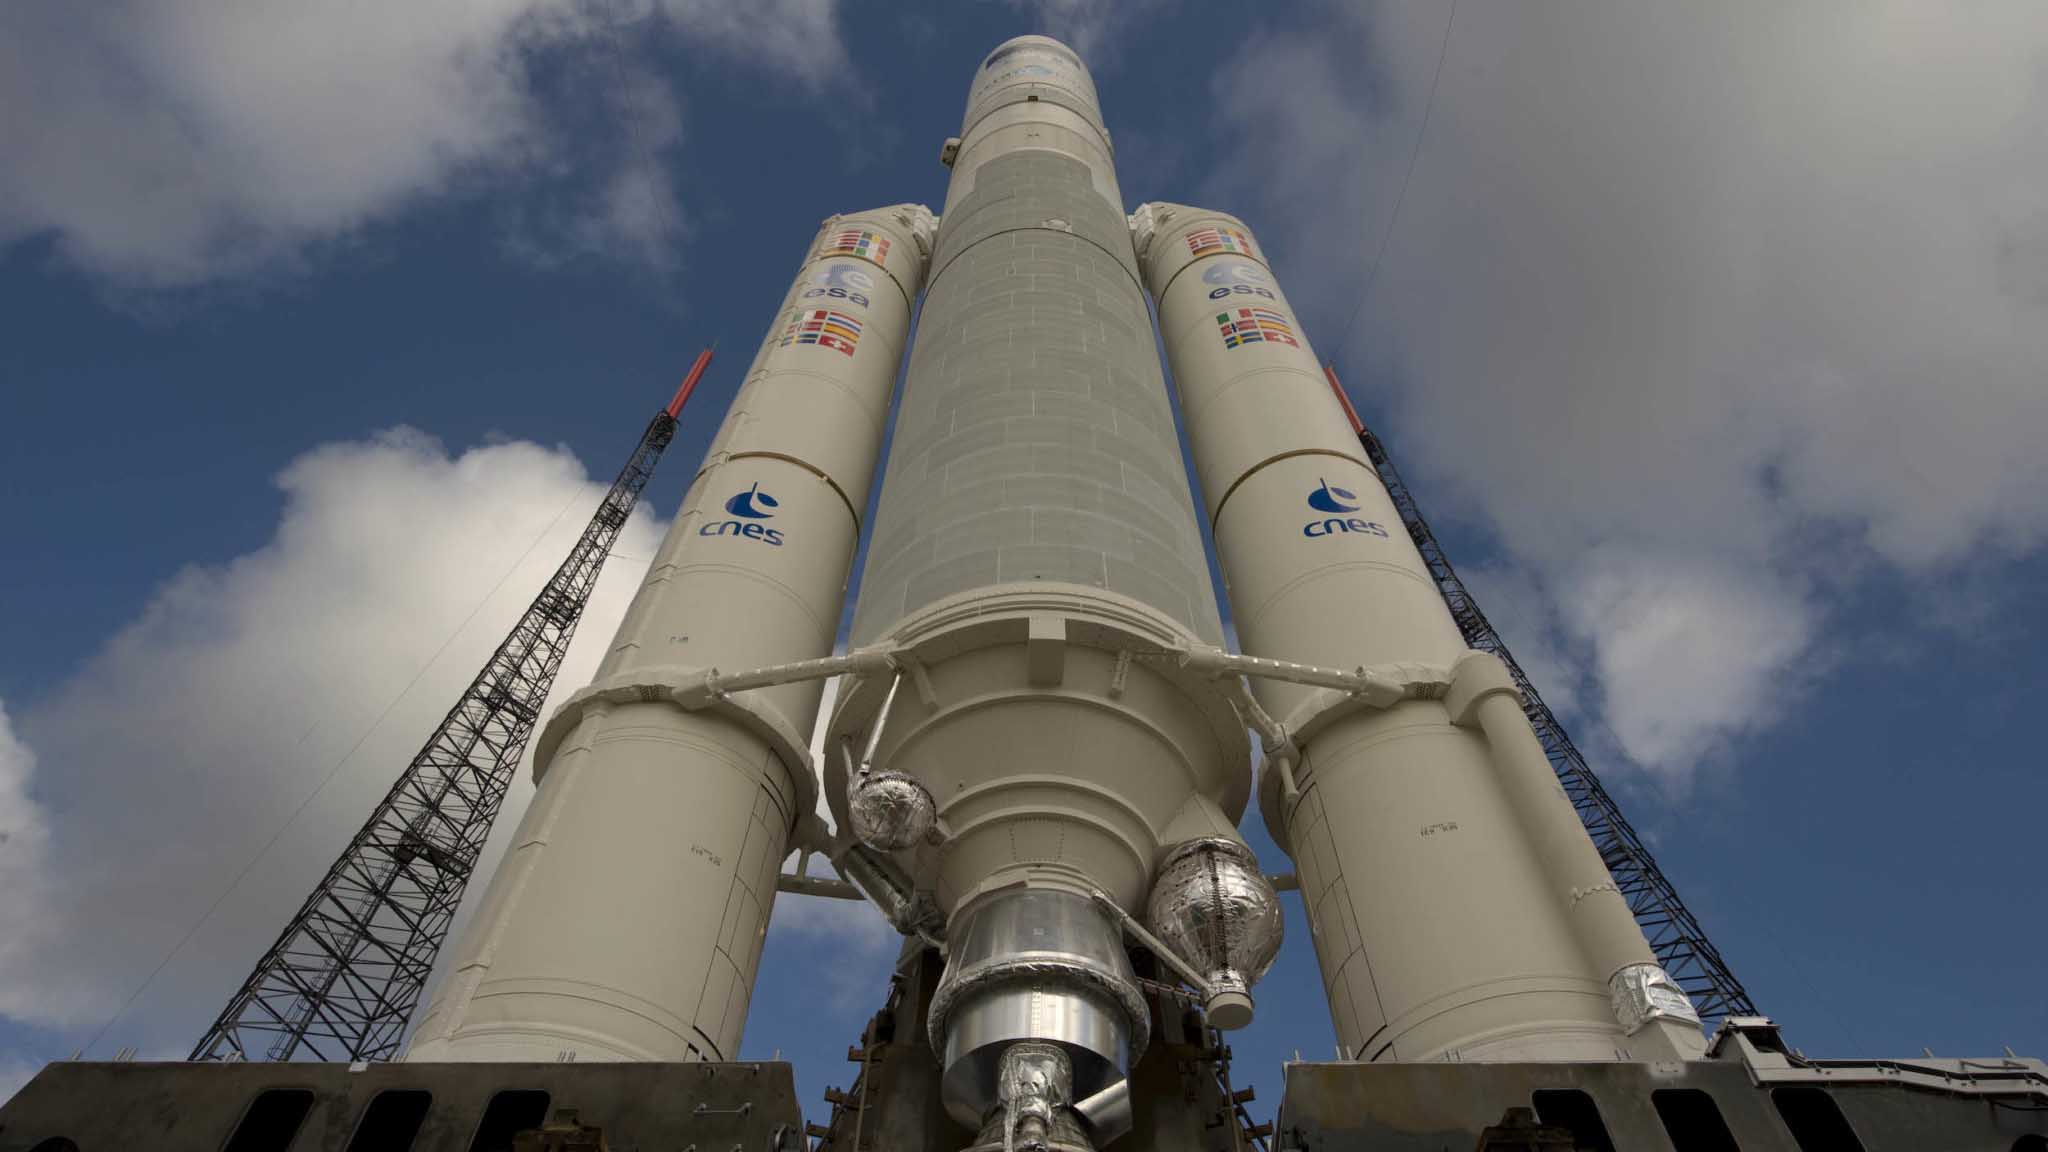 Catorce satélites han sido lanzados en cohetes Soyuz y otros cuatro con el europeo Ariane 5 en su versión ES, la de mayor capacidad